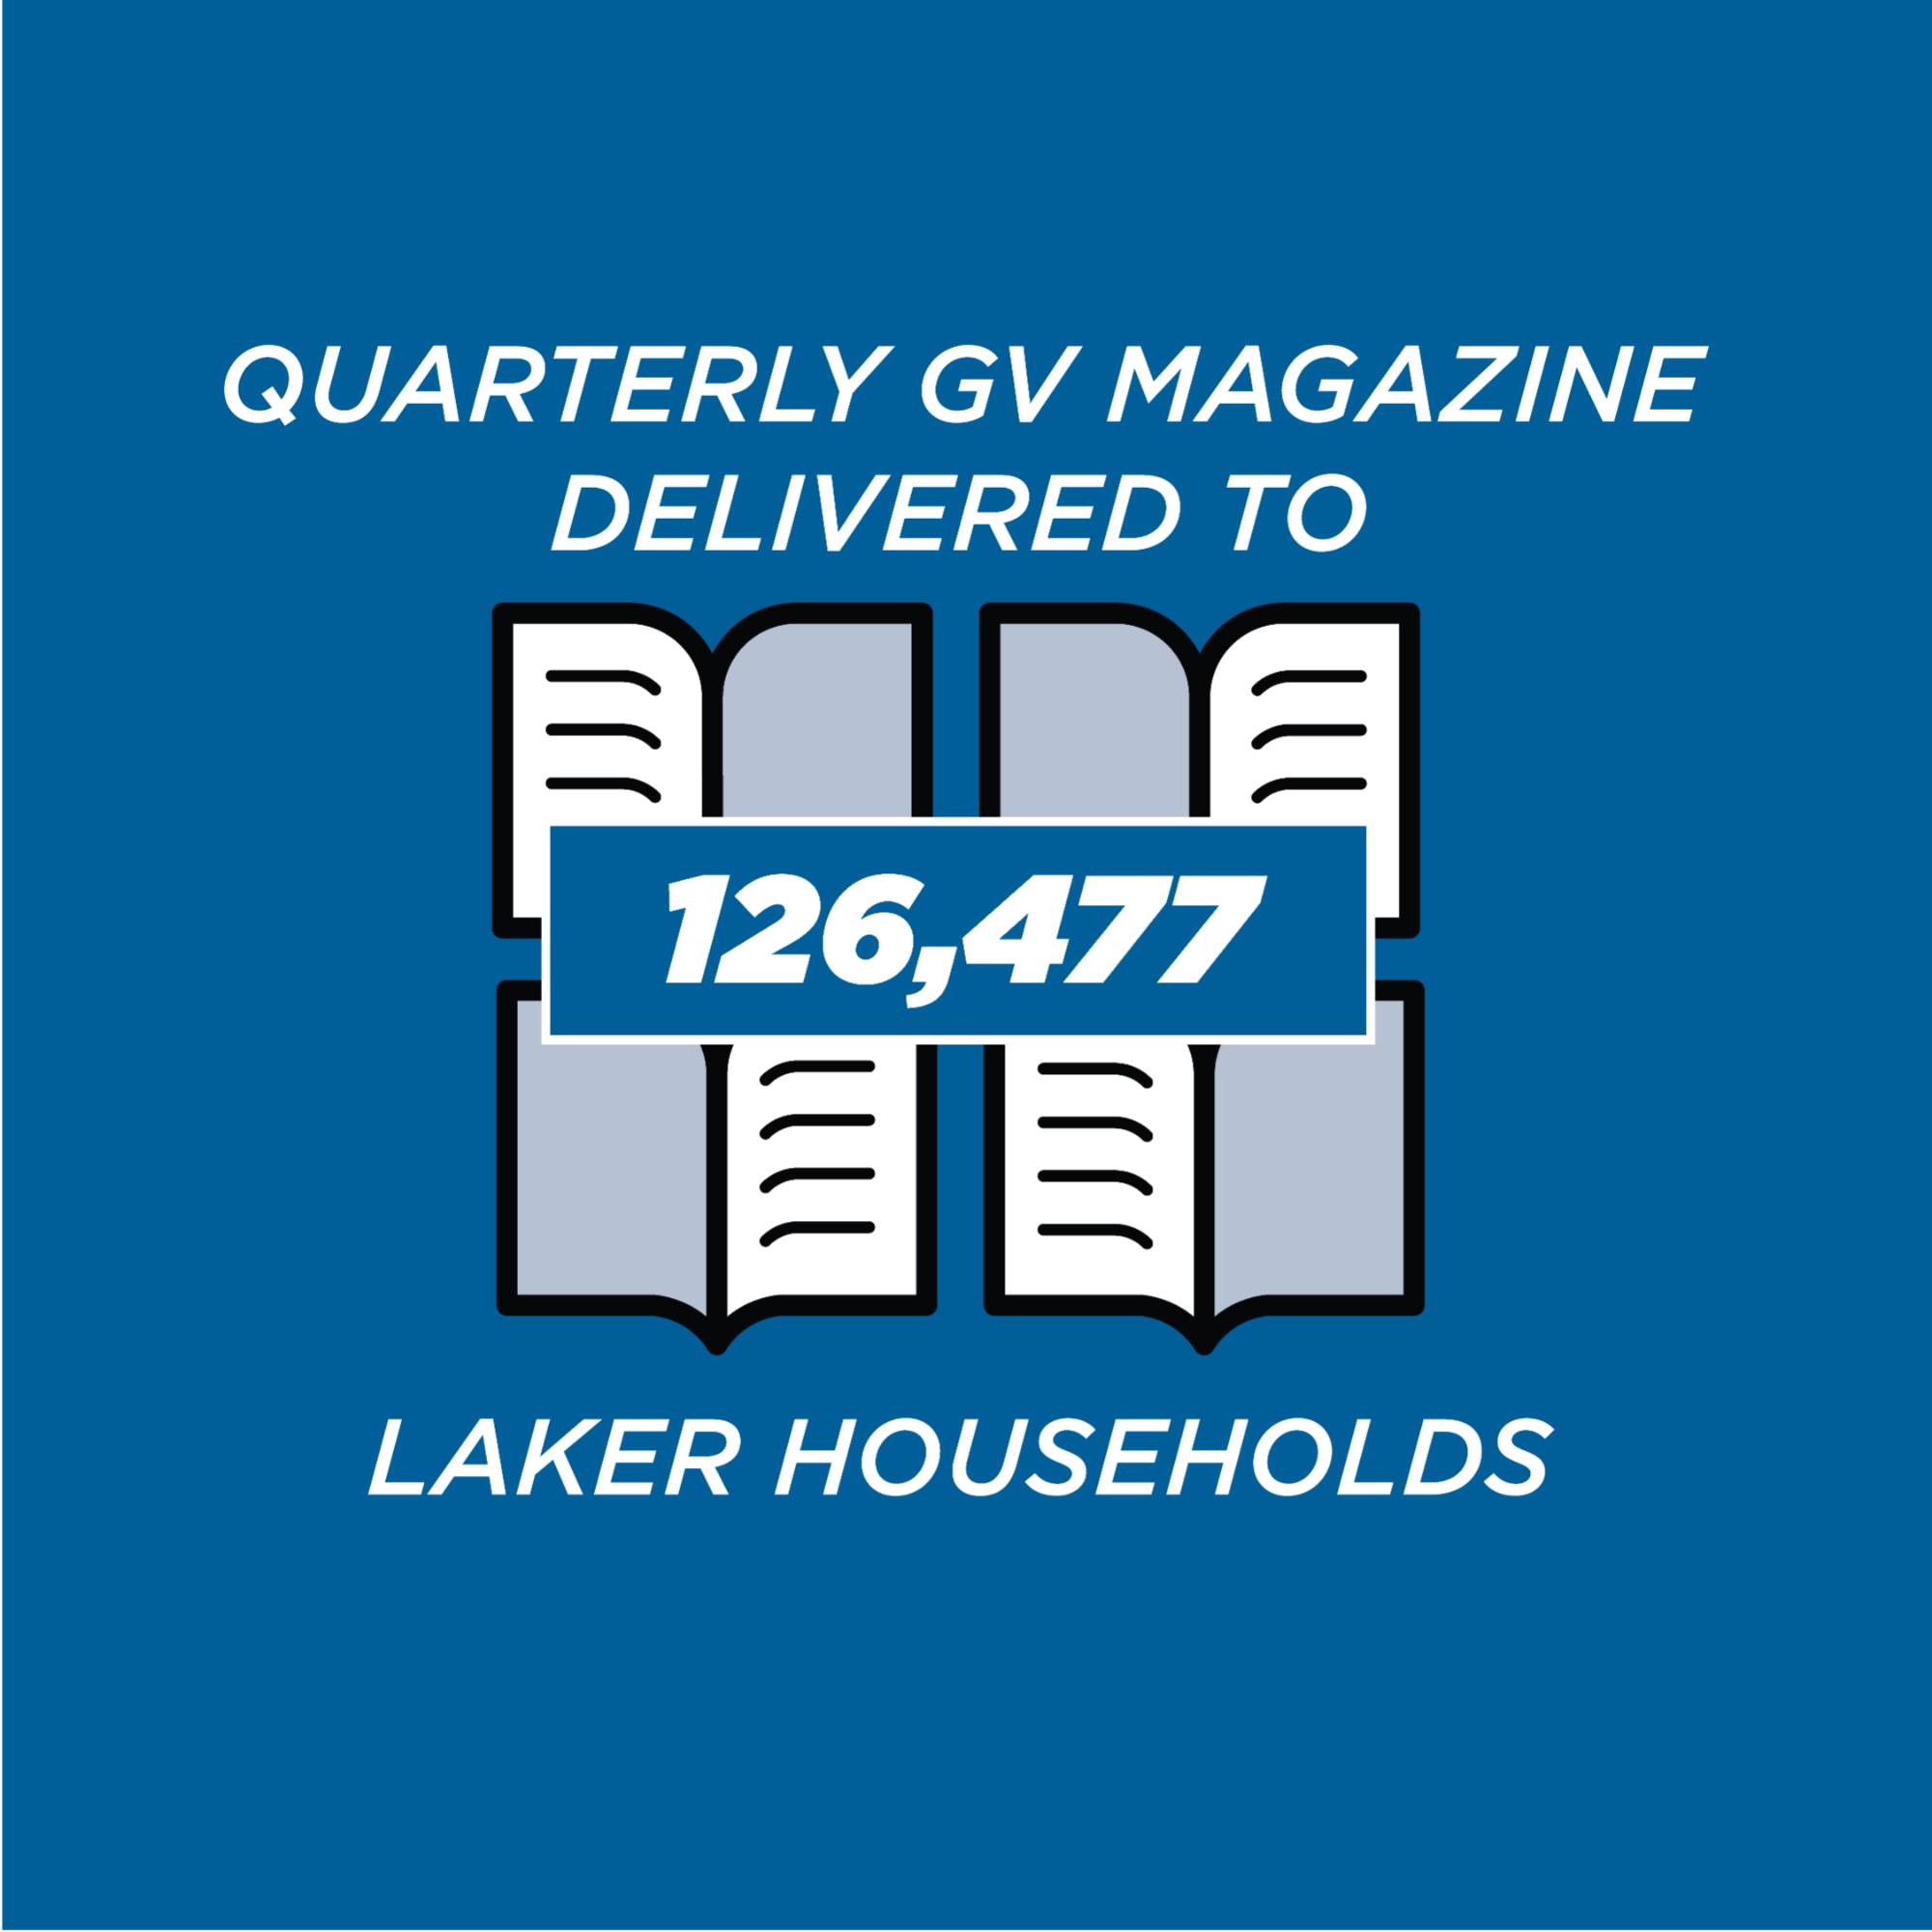 QUARTERLY GV MAGAZINE  DELIVERED TO 126,477 LAKER HOUSEHOLDS.